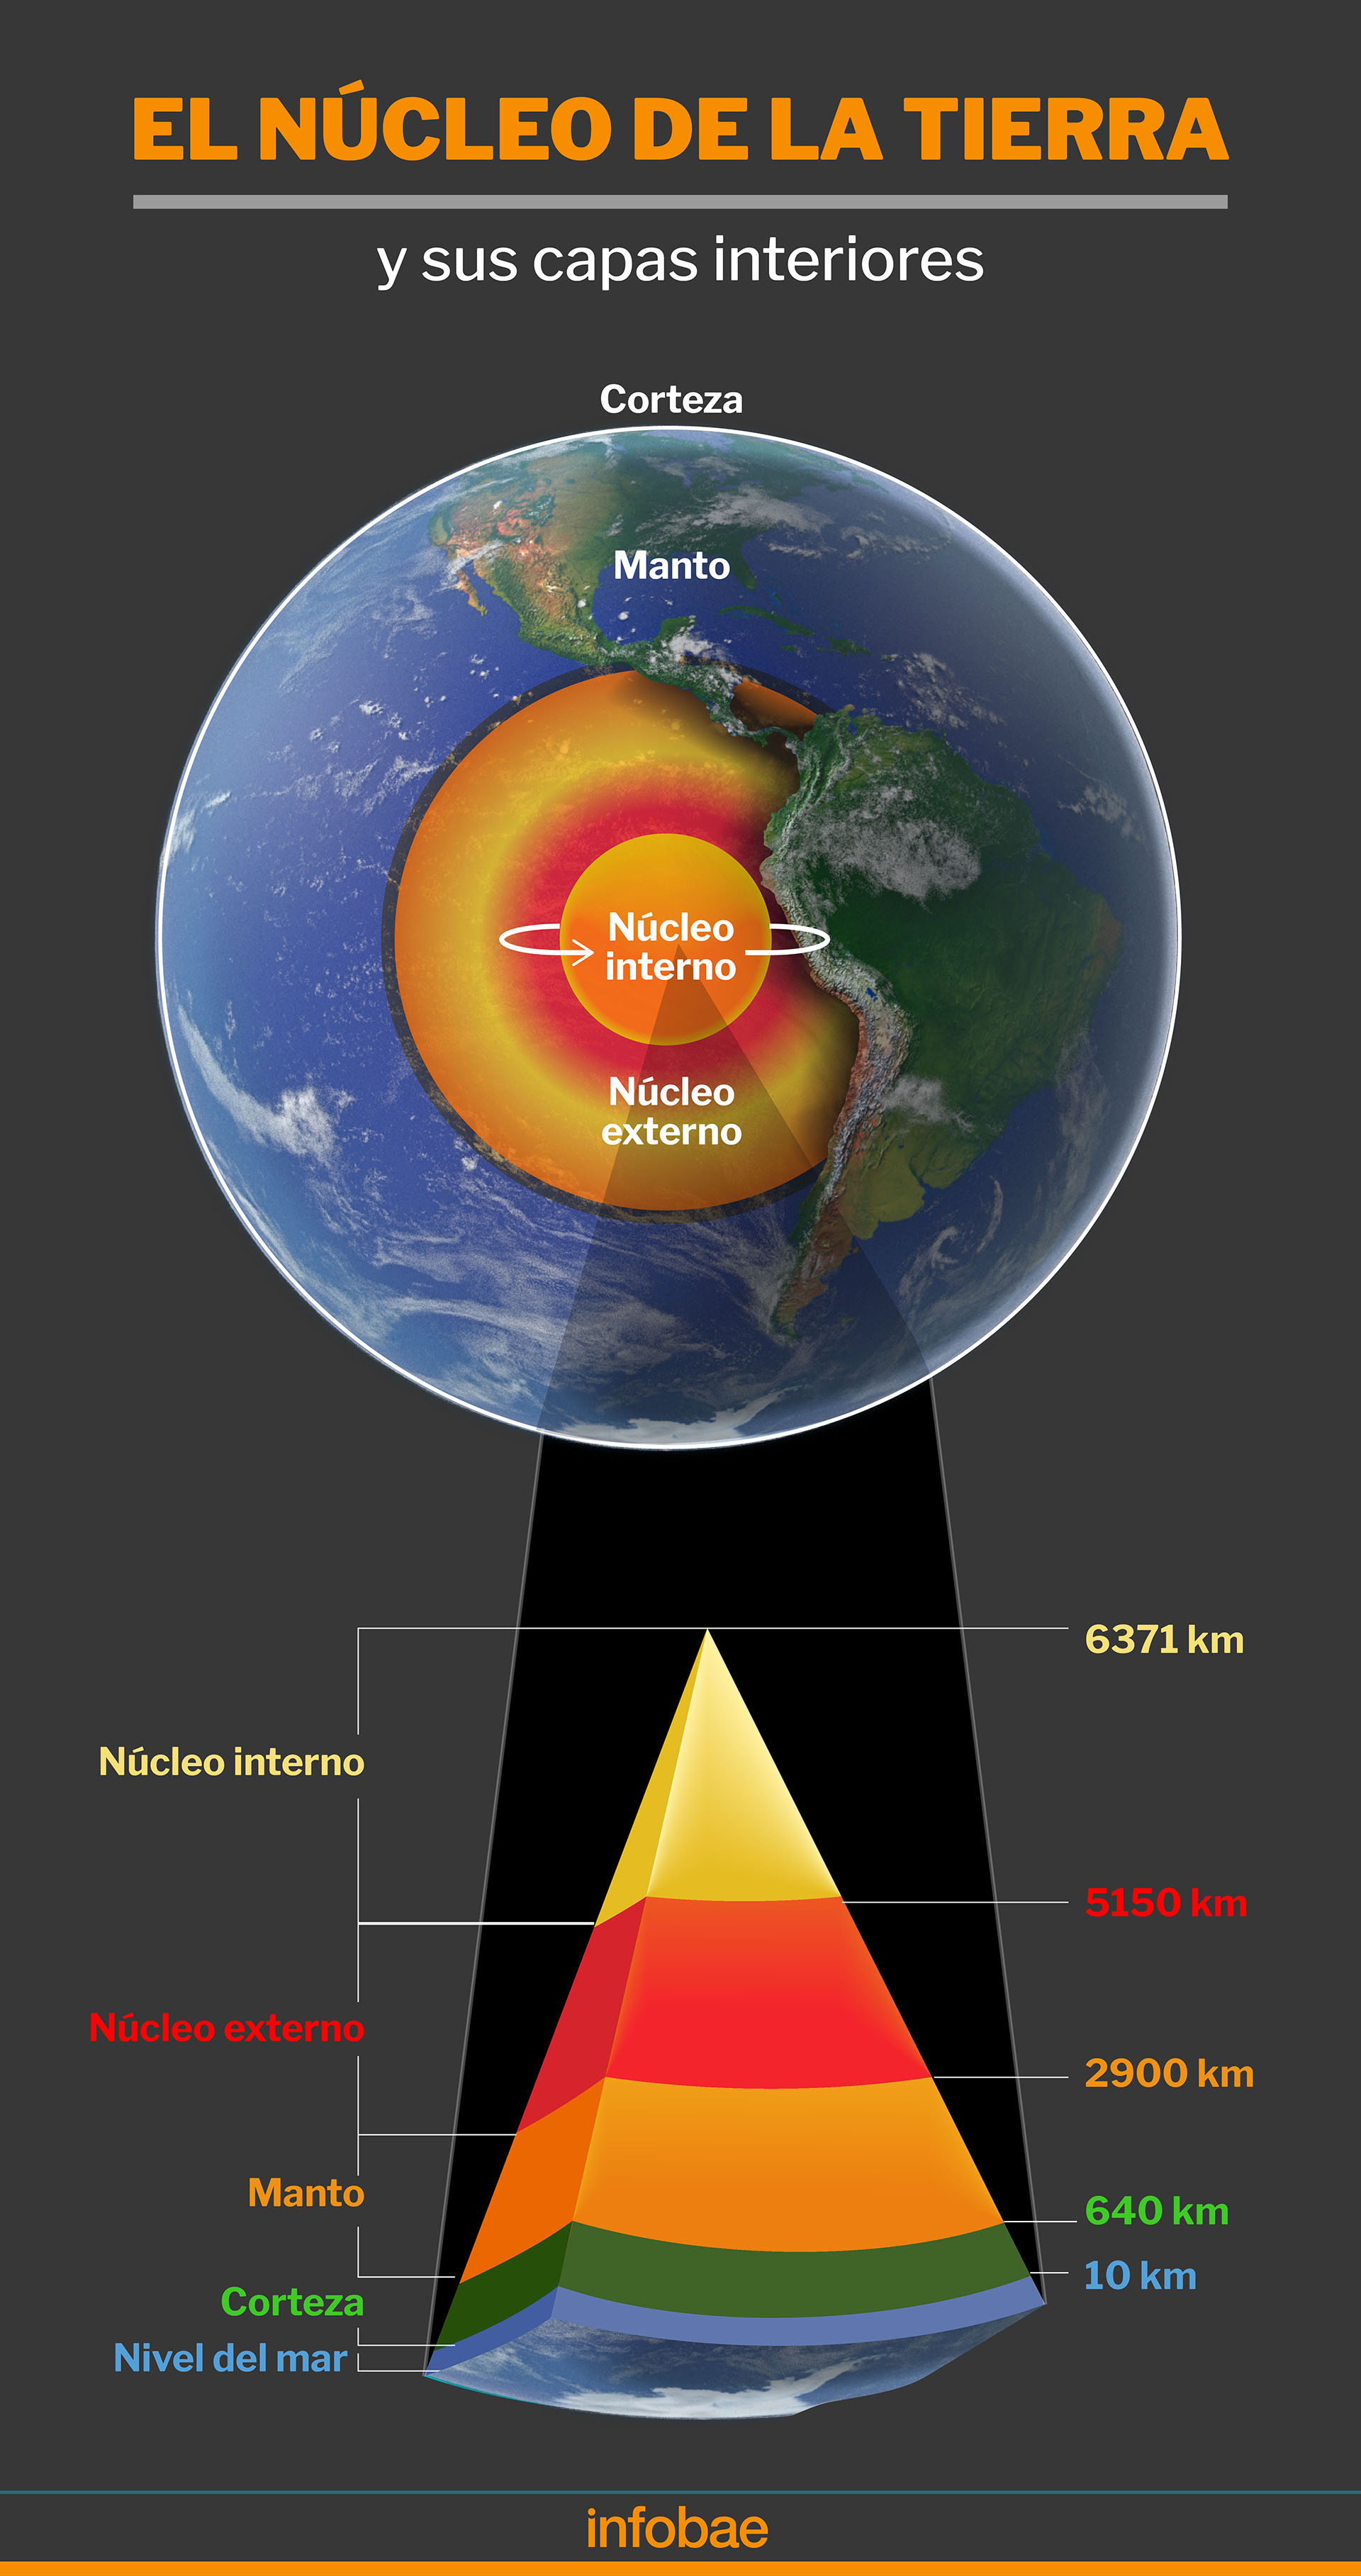 El comportamiento del nuevo núcleo ante la propagación de las ondas sísmicas es diferente al que se produce en el núcleo interno 